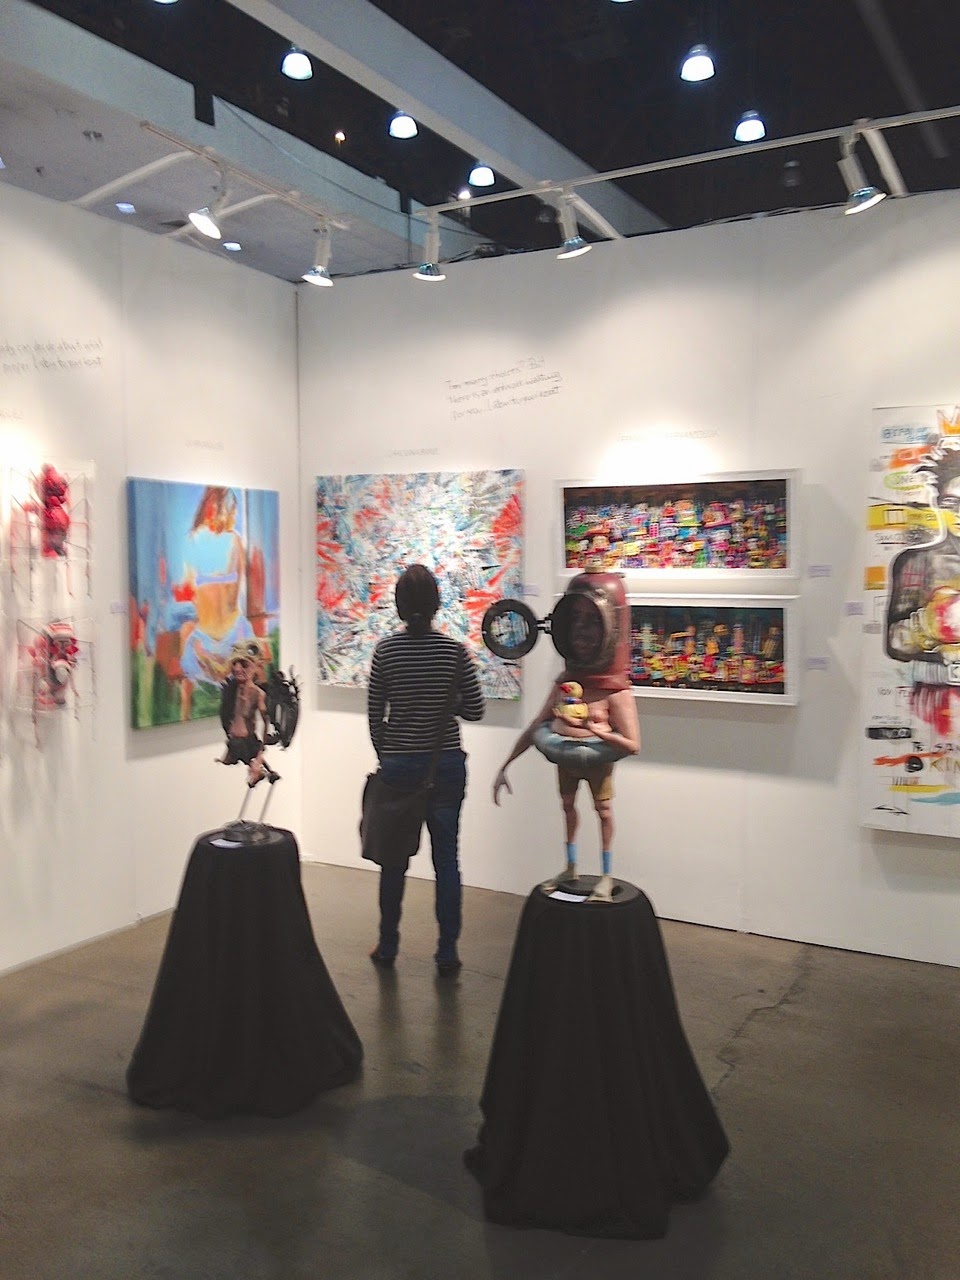 Obras expuestas en el stand de Escarlata Galery en la World Wide L.A 2014